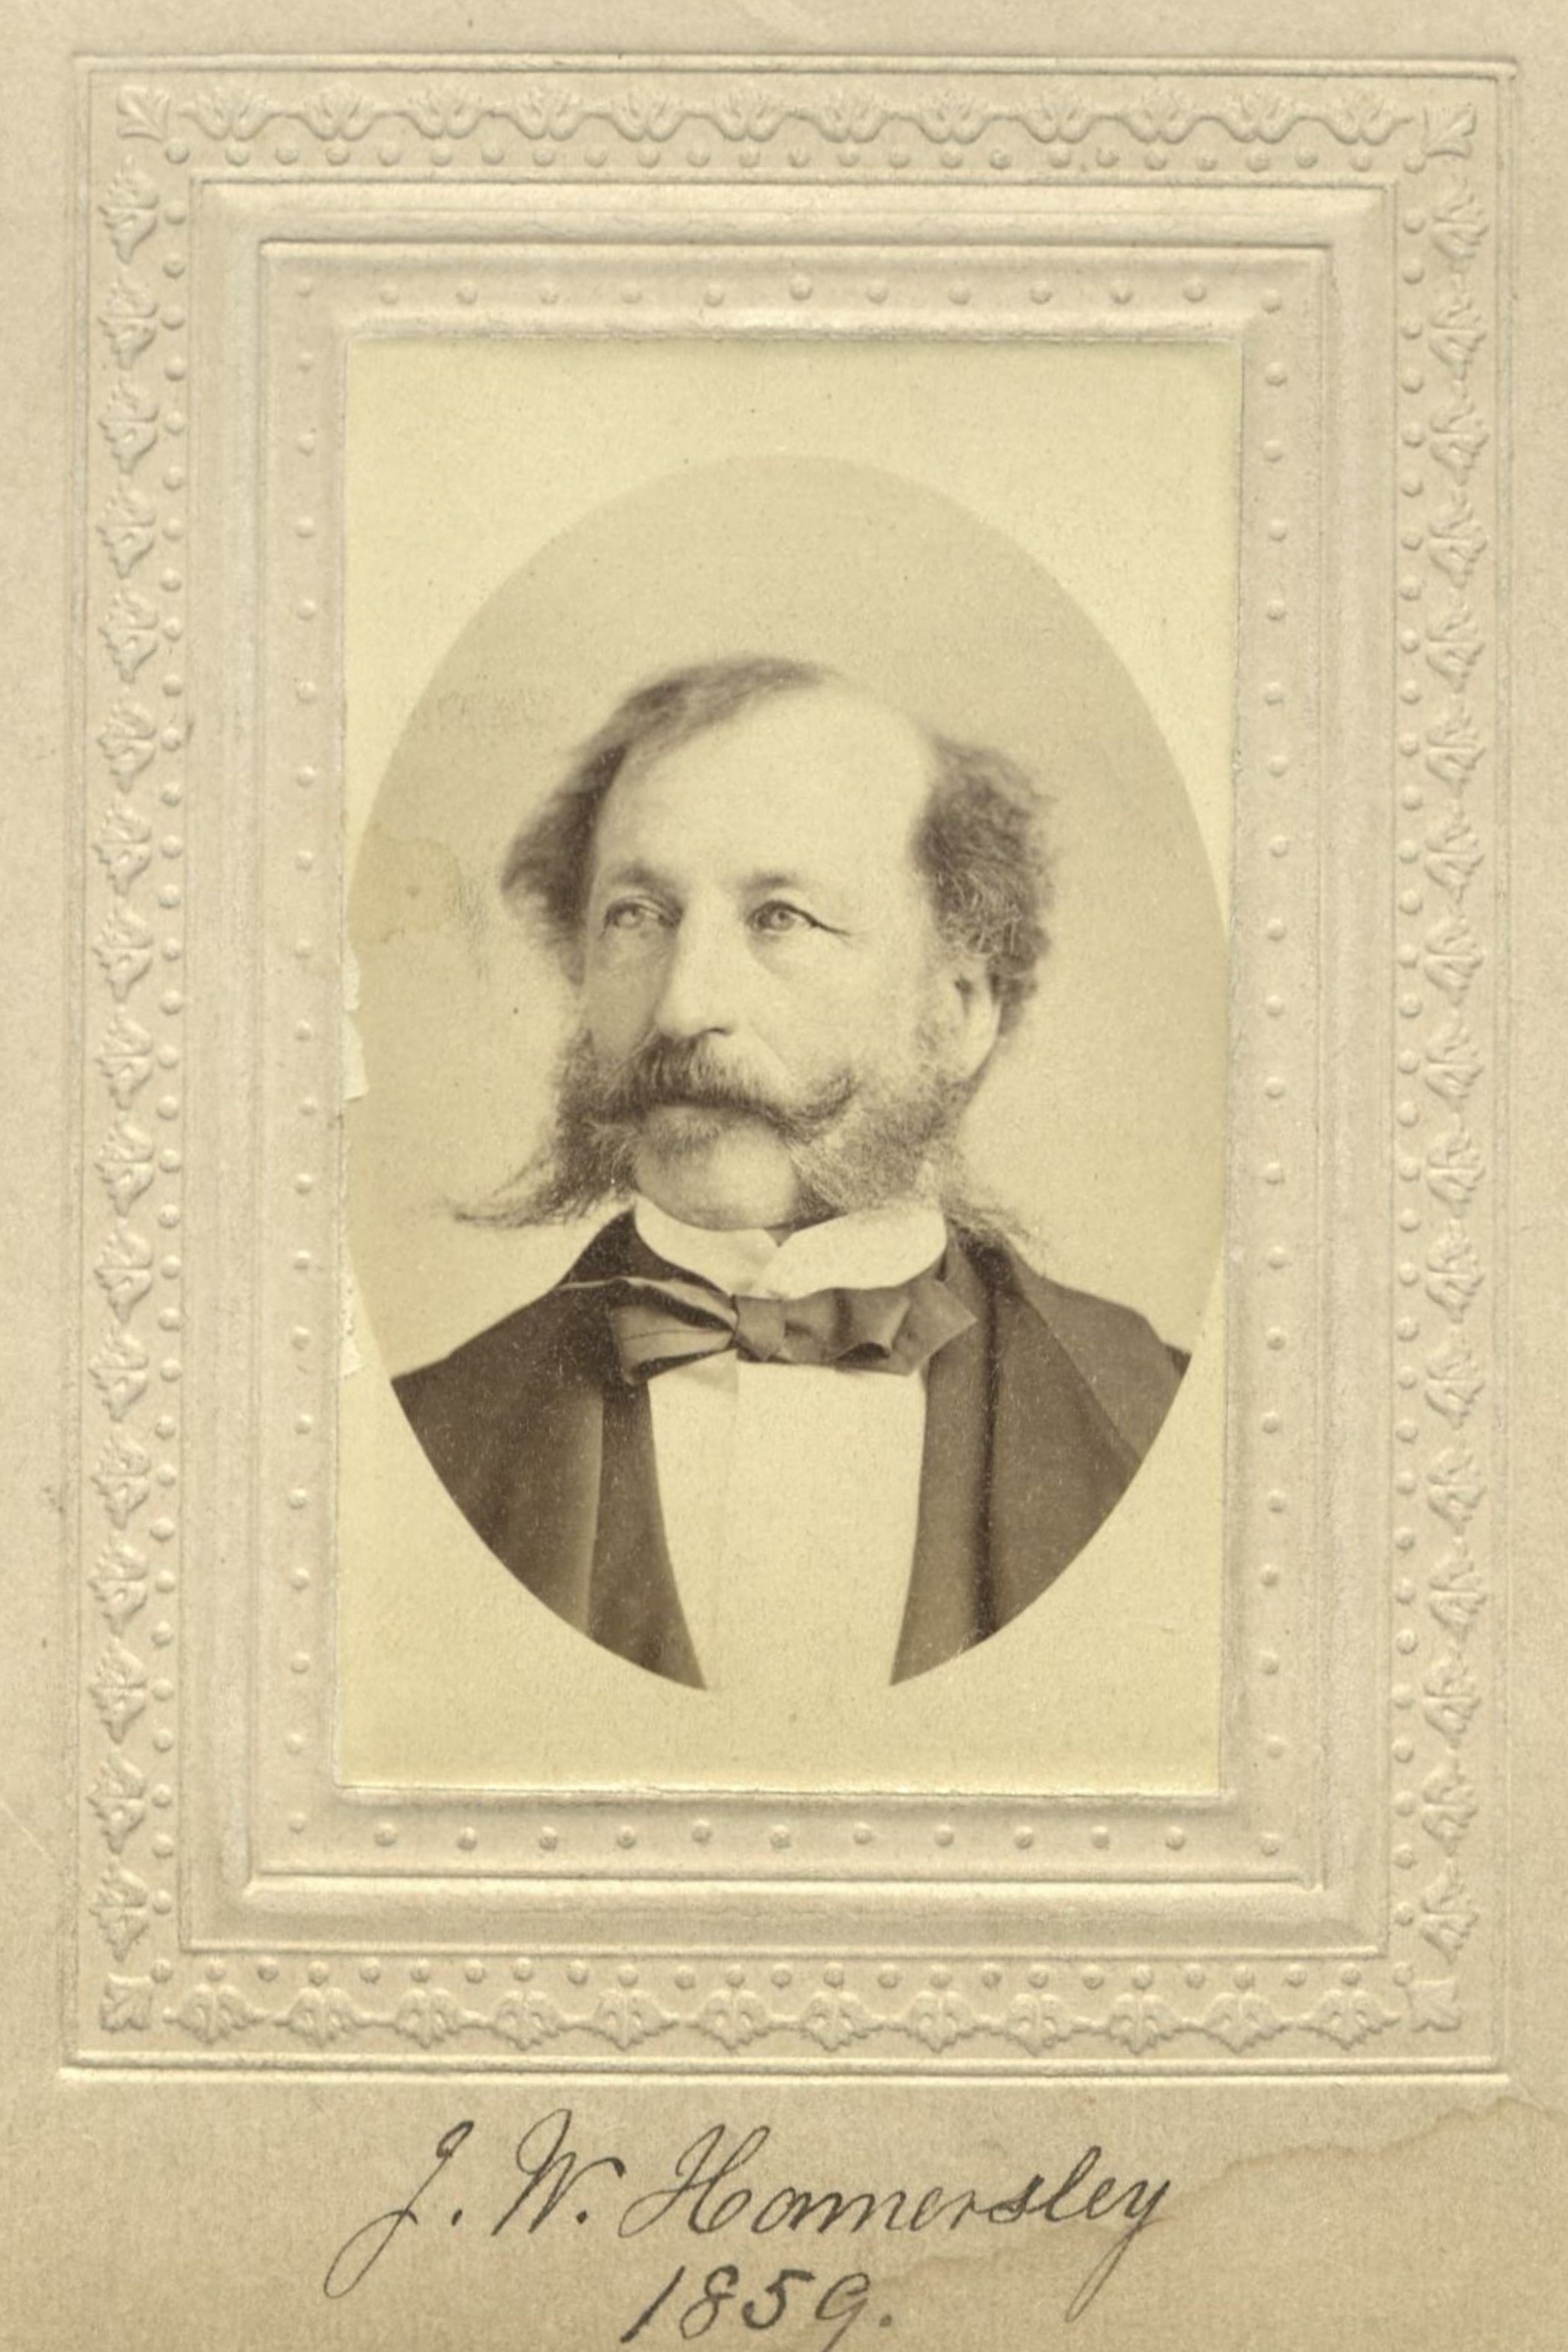 Member portrait of John W. Hamersley